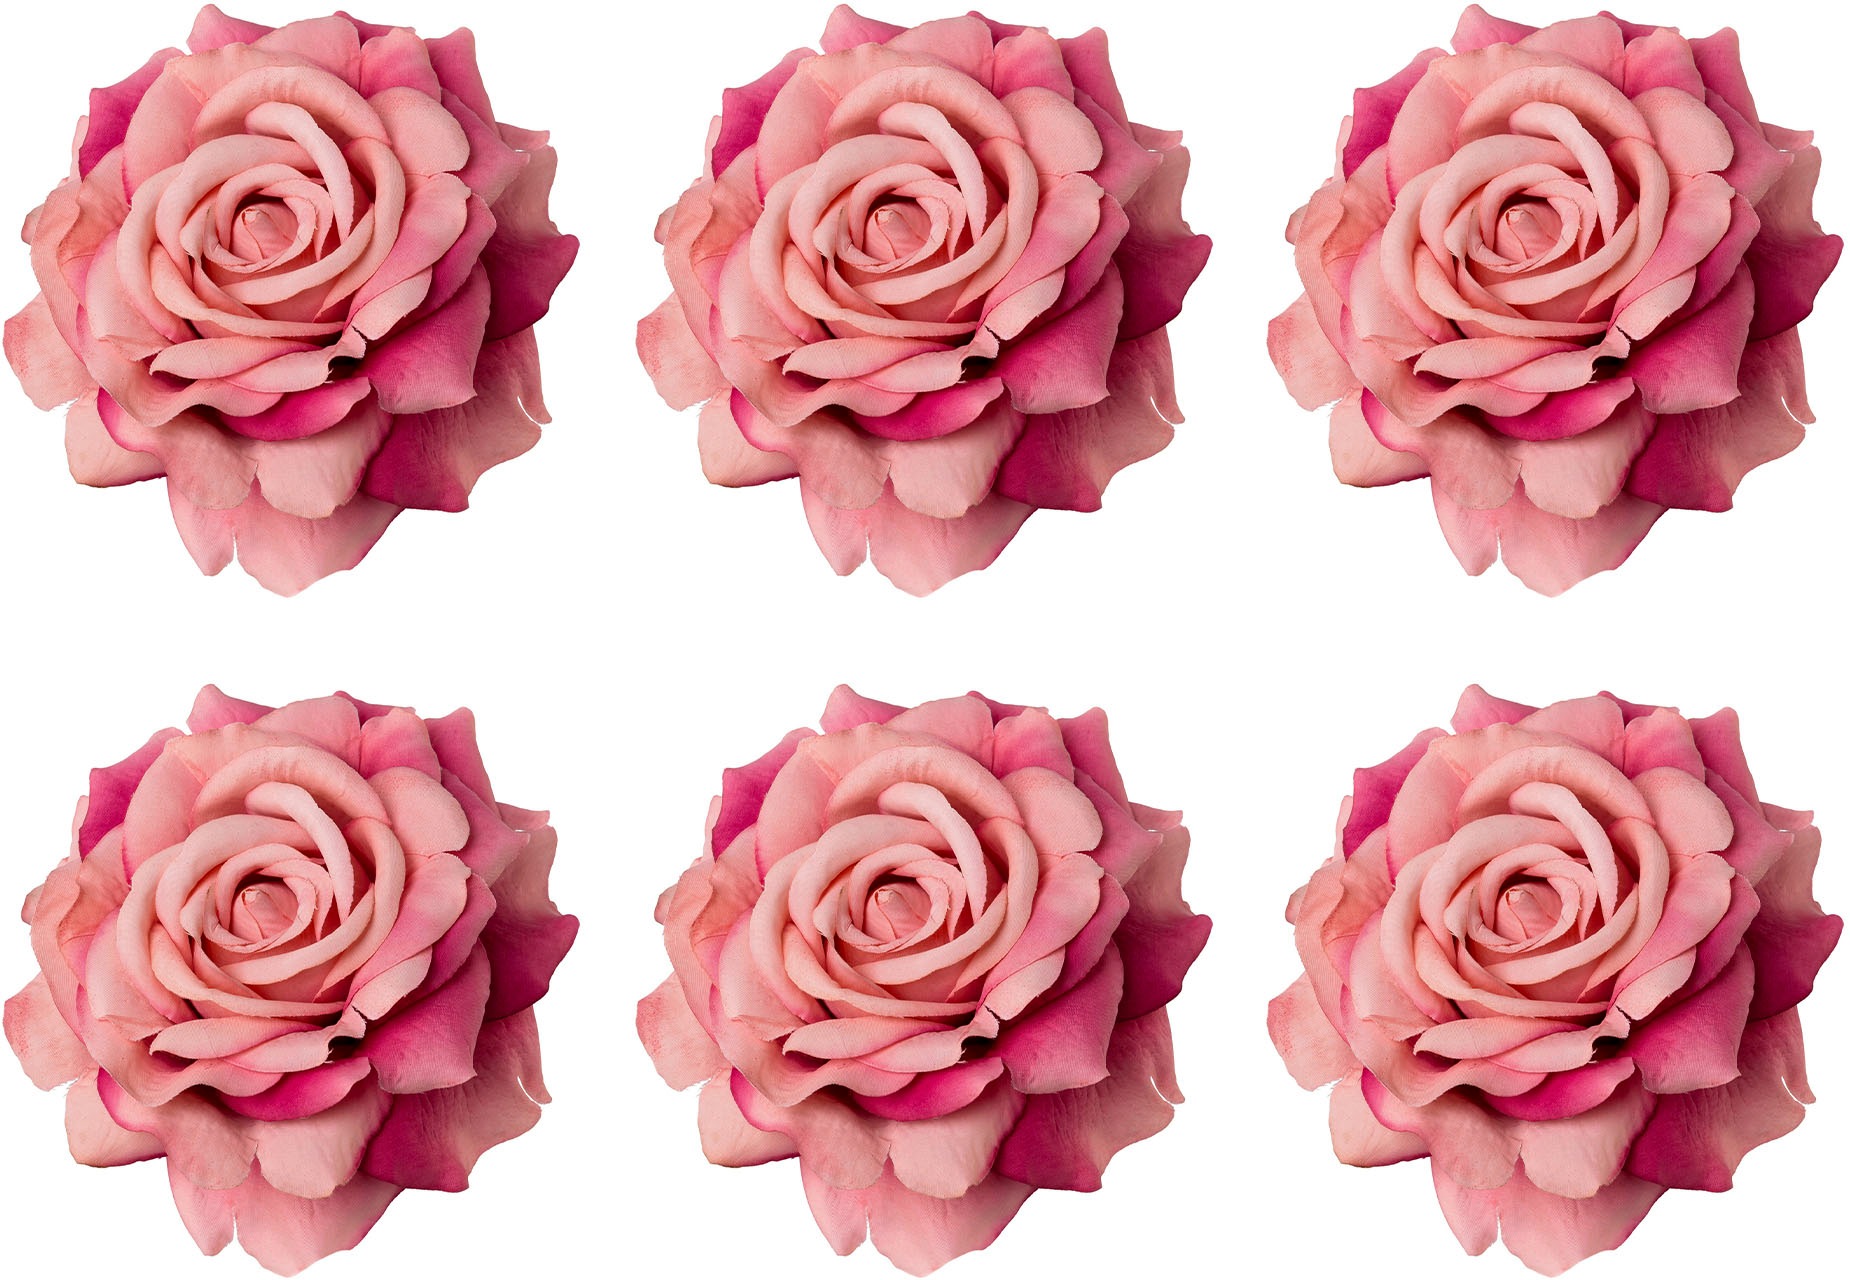 Rosen online kaufen ▷ Schöne Rosen auf Rechnung | BAUR